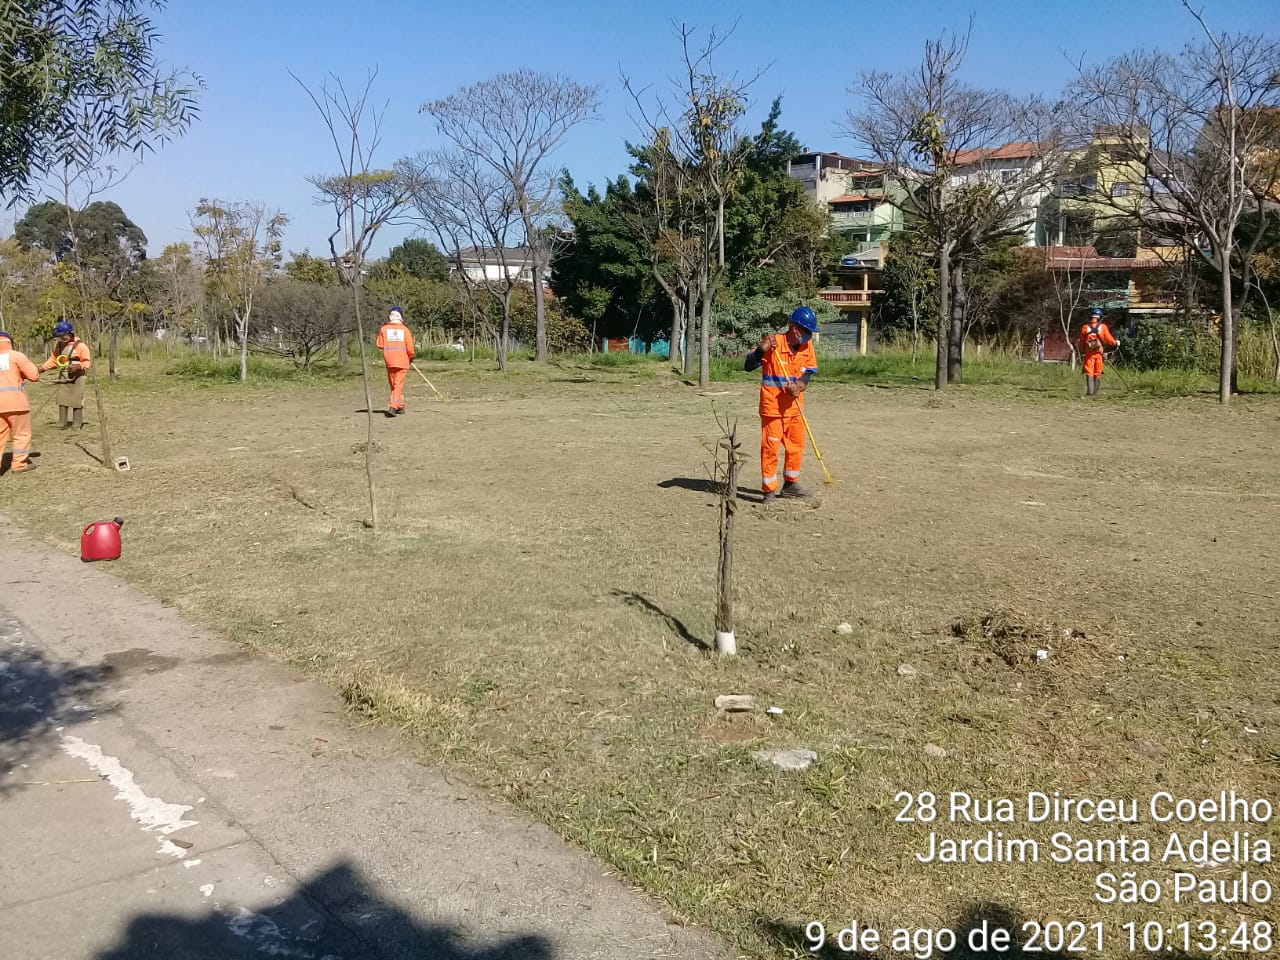 Trabalhadores com uniforme laranja trabalham no corte de grama em uma praça. Foto identificada como sendo rua Dirceu Coelho, Jardim Santa Adélia. 